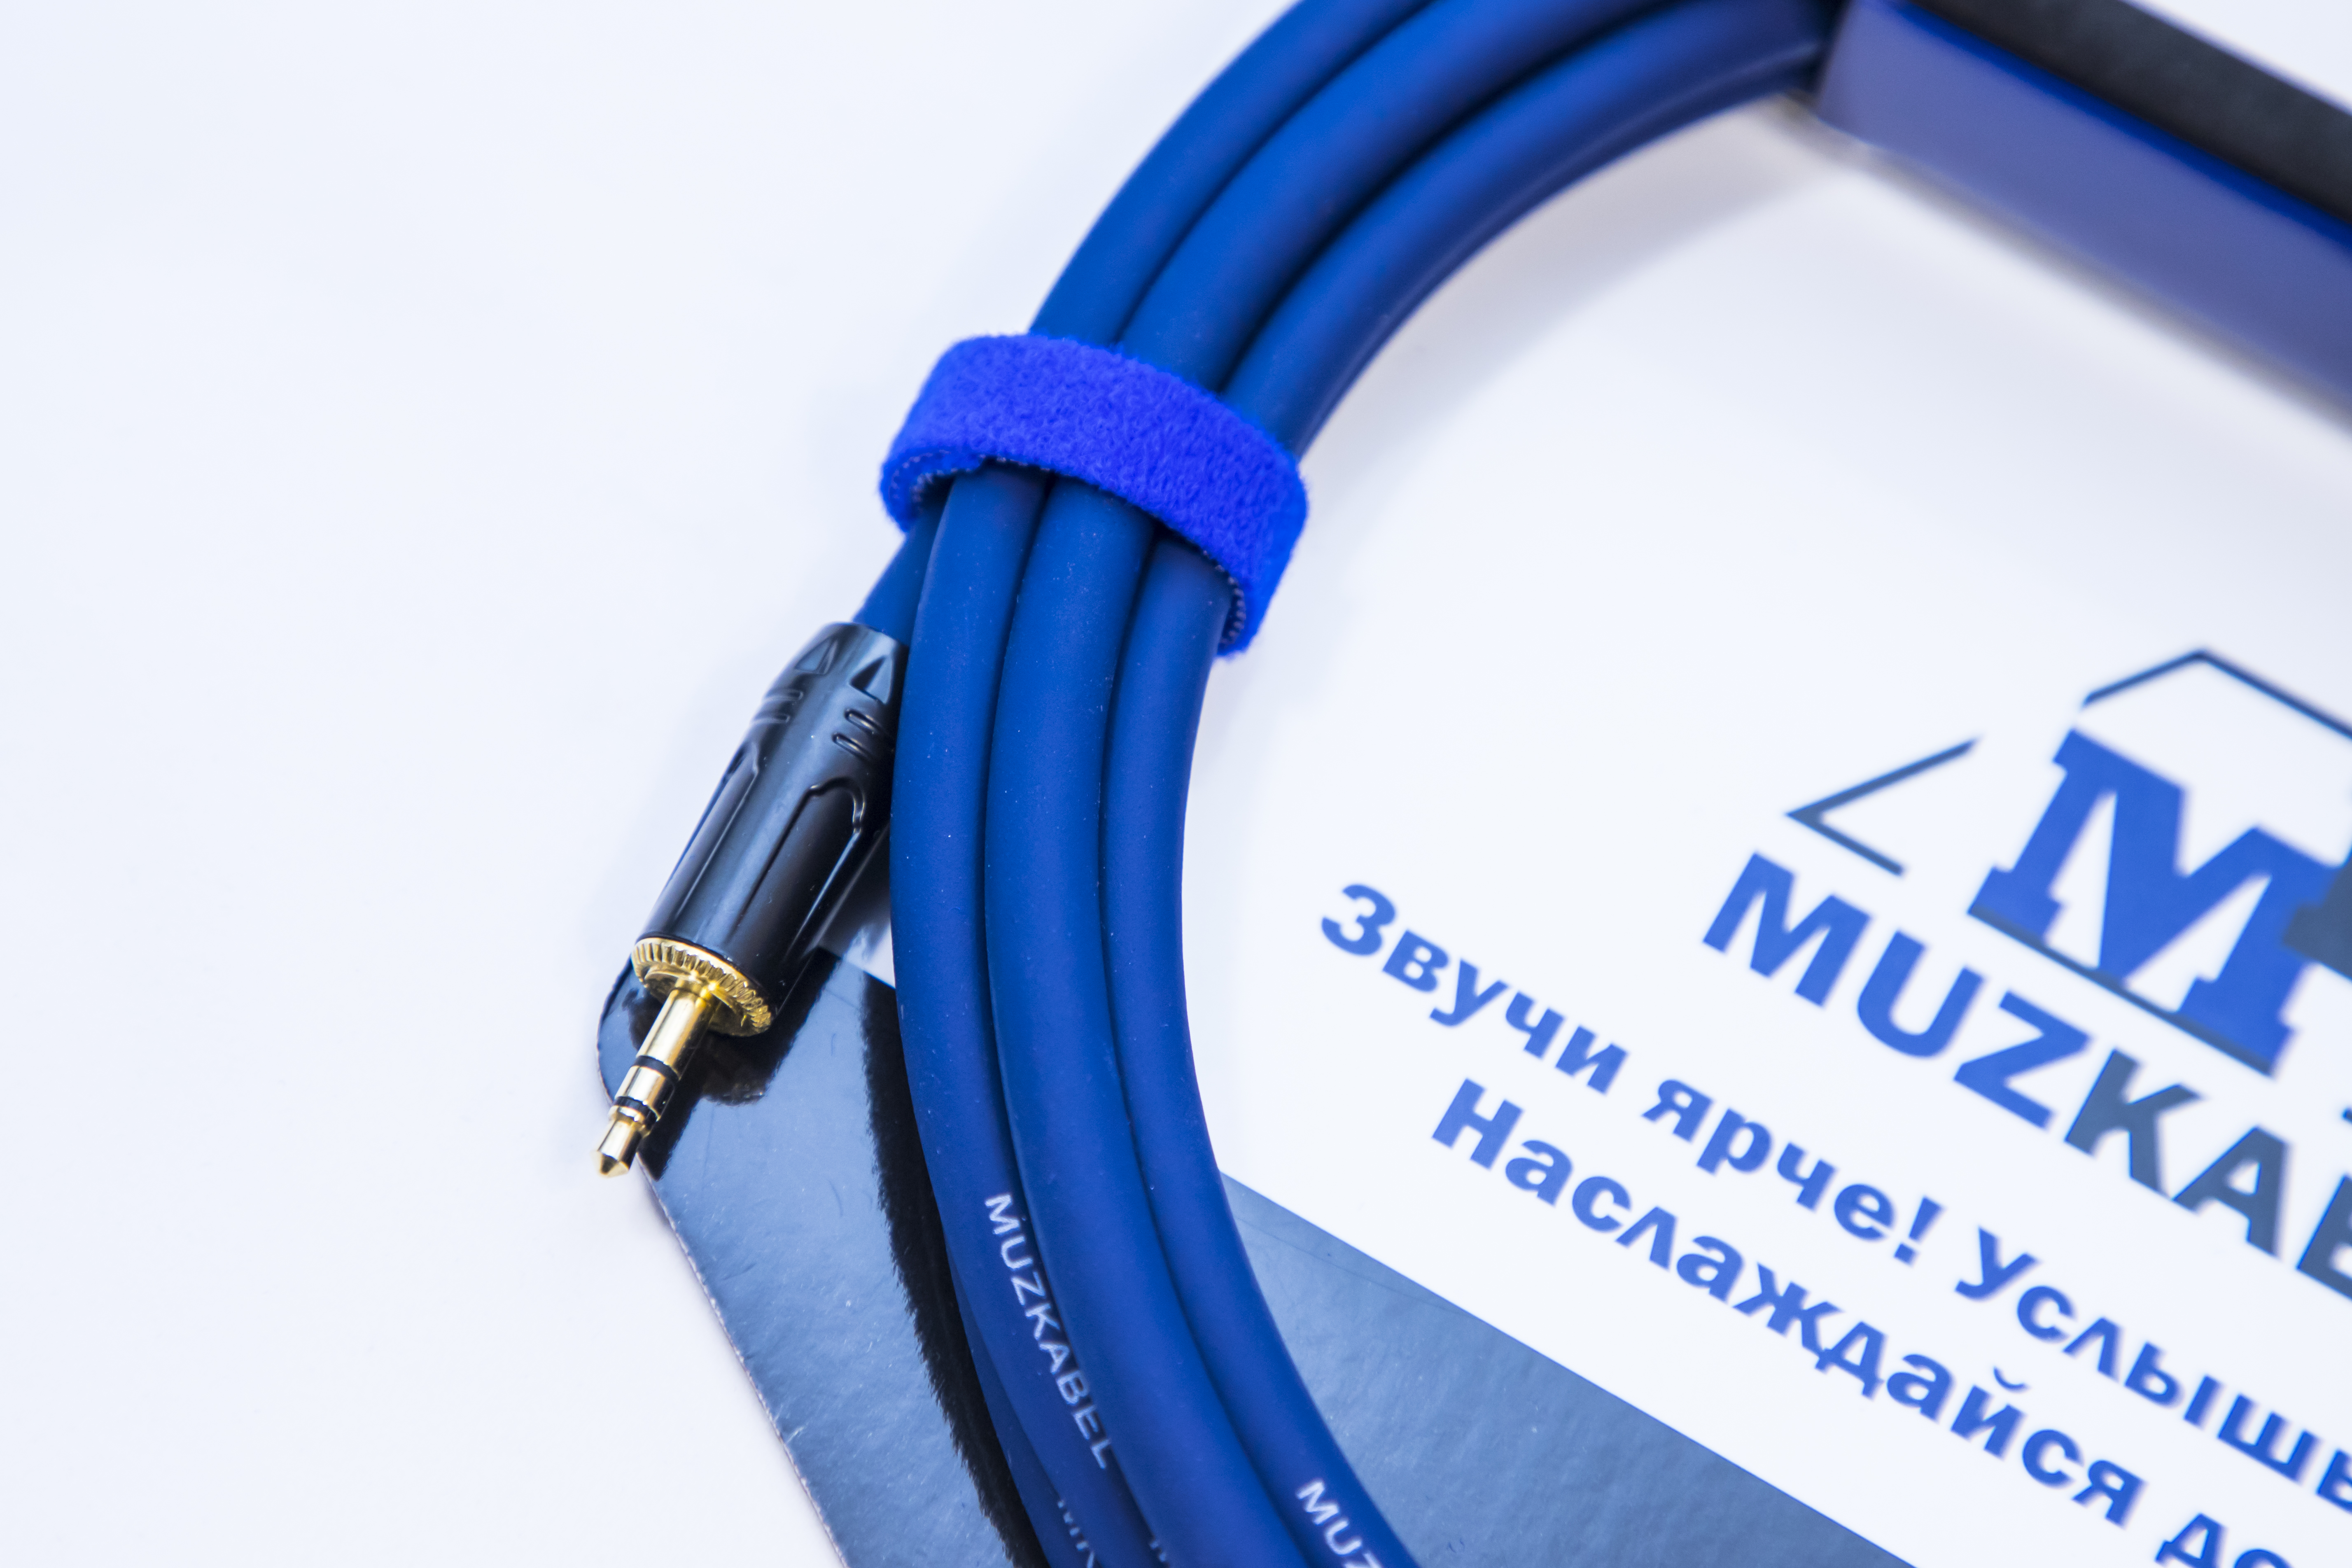 Аудио кабель MUZKABEL MFXMK1S - 10 метров, MINI JACK (3.5) - MINI JACK (3.5)